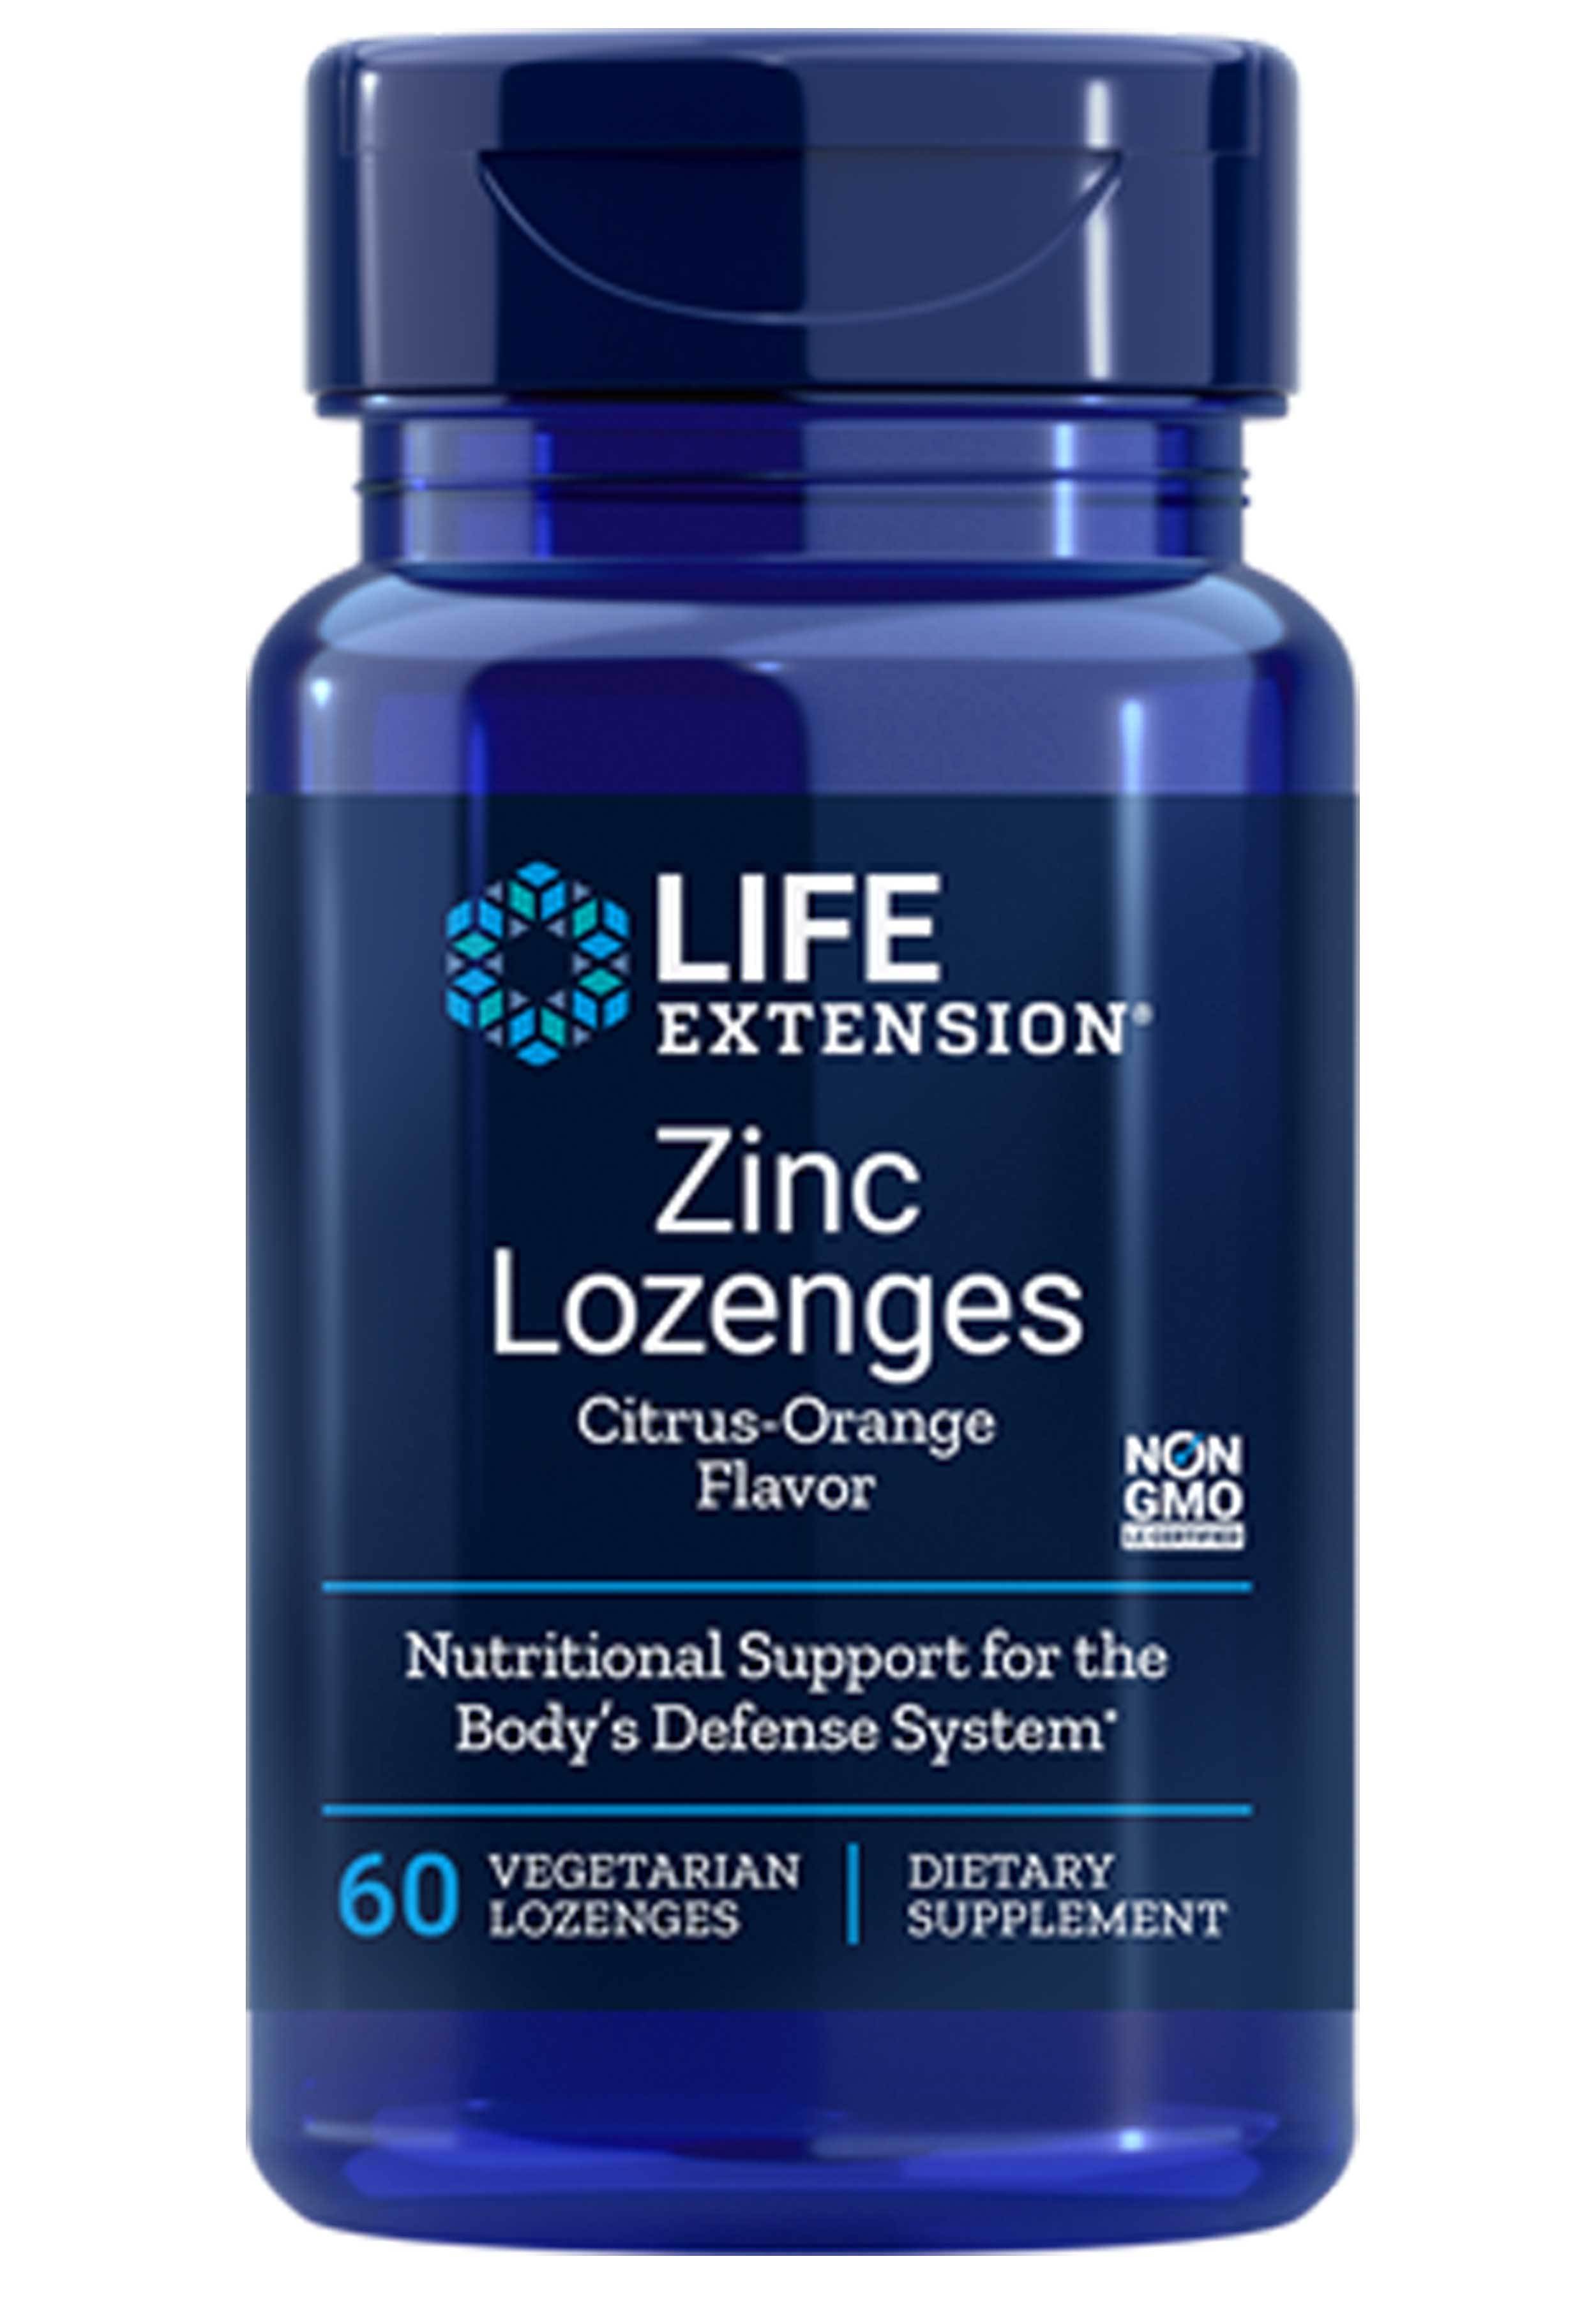 Life Extension Zinc Lozenges